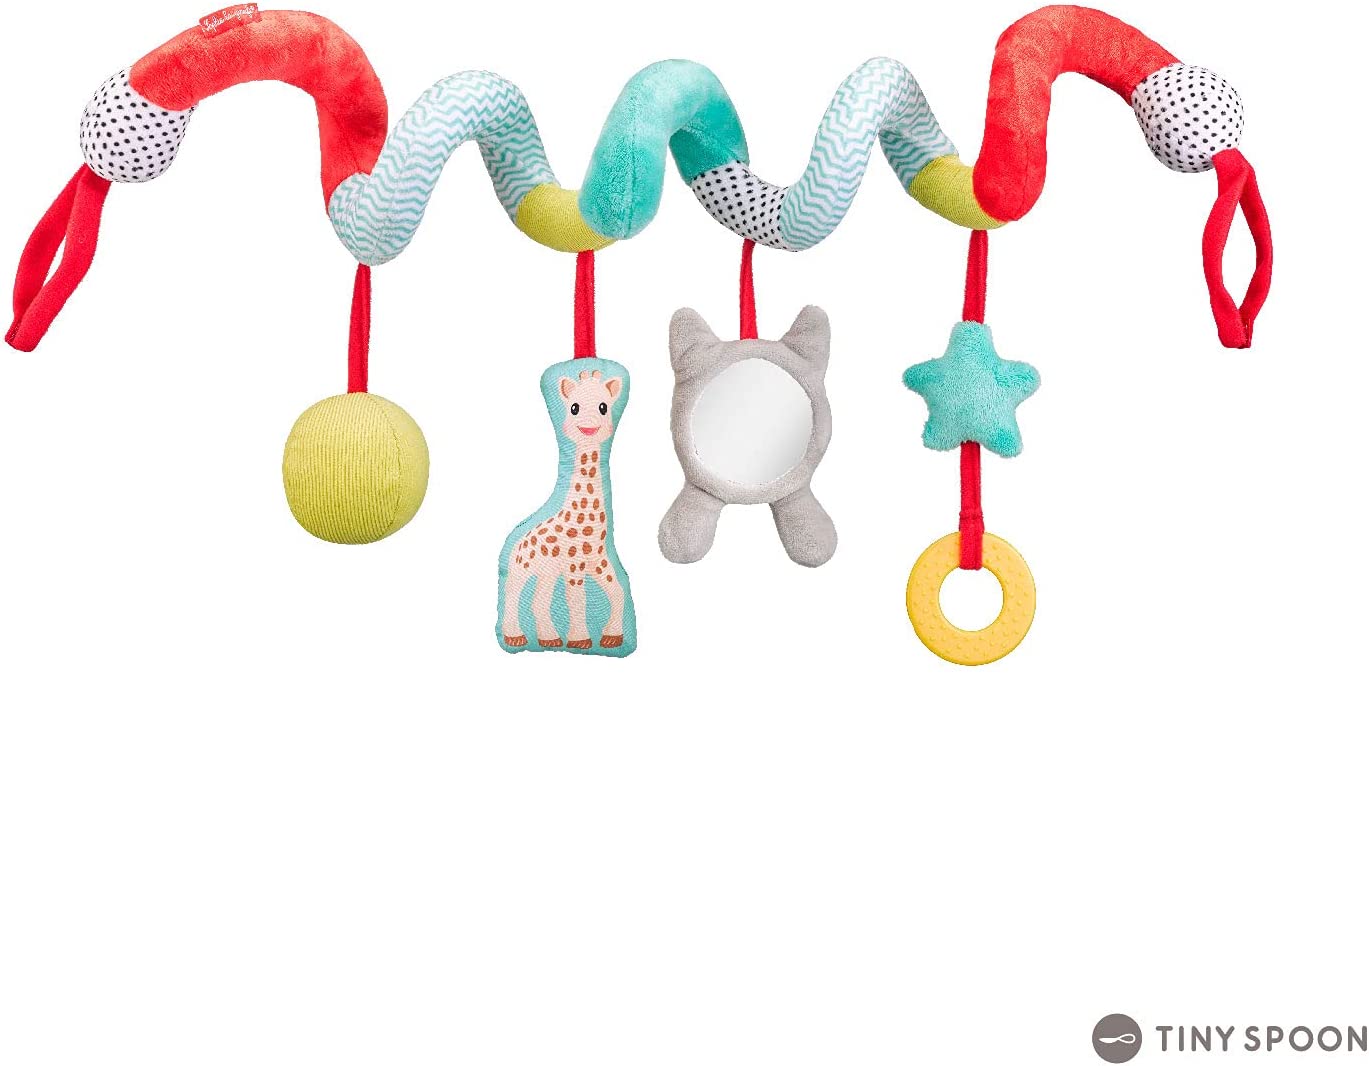 Girafa Sophie Brinquedo Espiral para Carrinho ou Berço